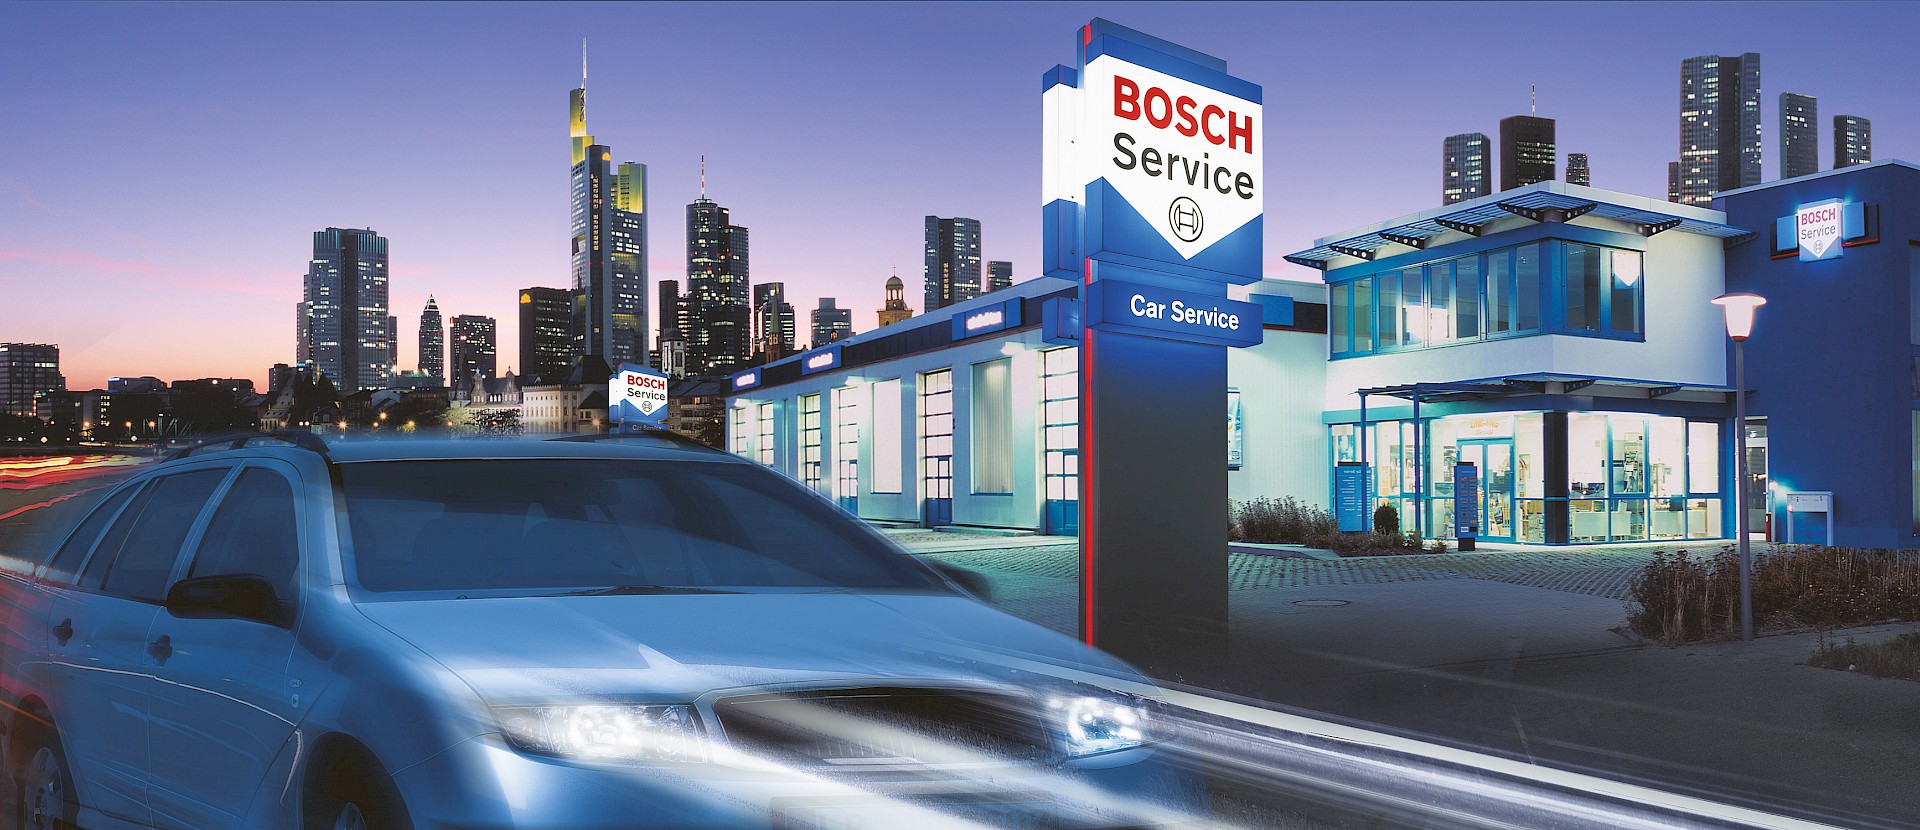 Bosch Car Service Johnson, Datenschutz